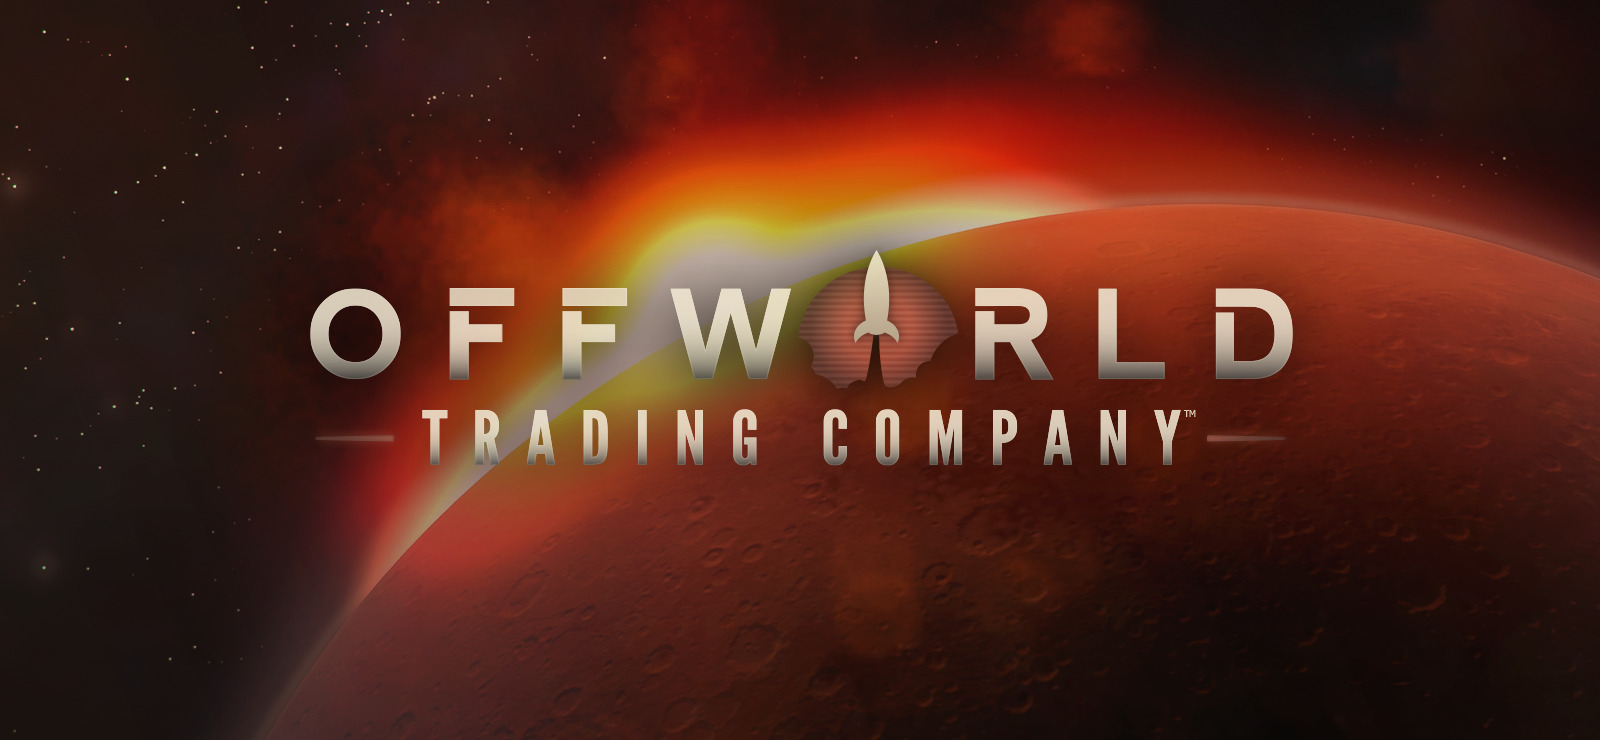 offworld trading company strategy